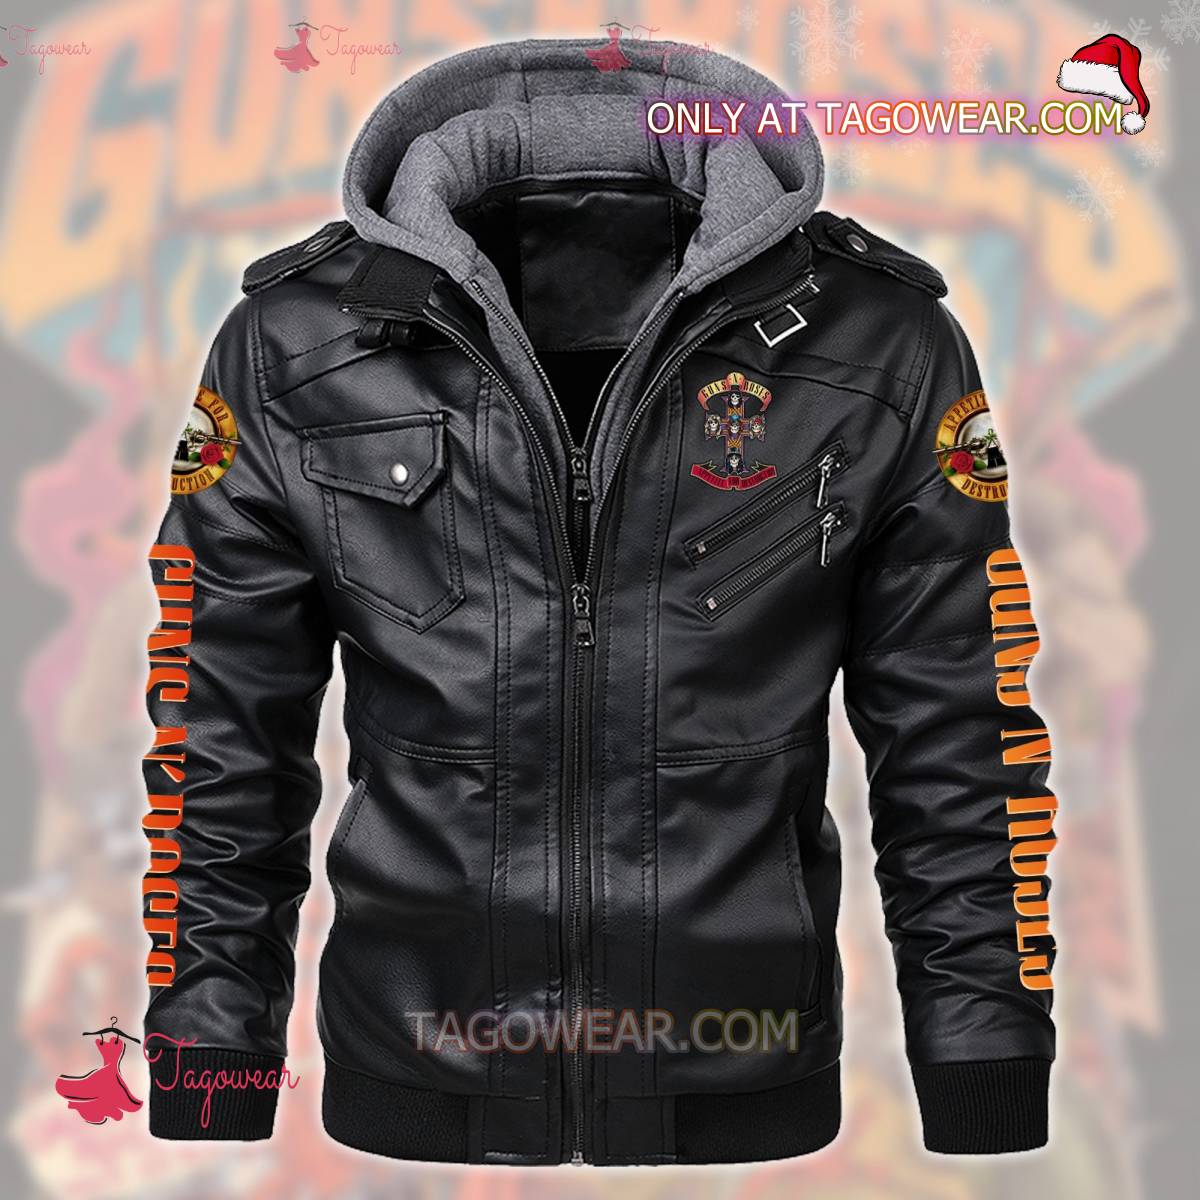 Guns N' Roses Appetite For Destruction Leather Jacket a